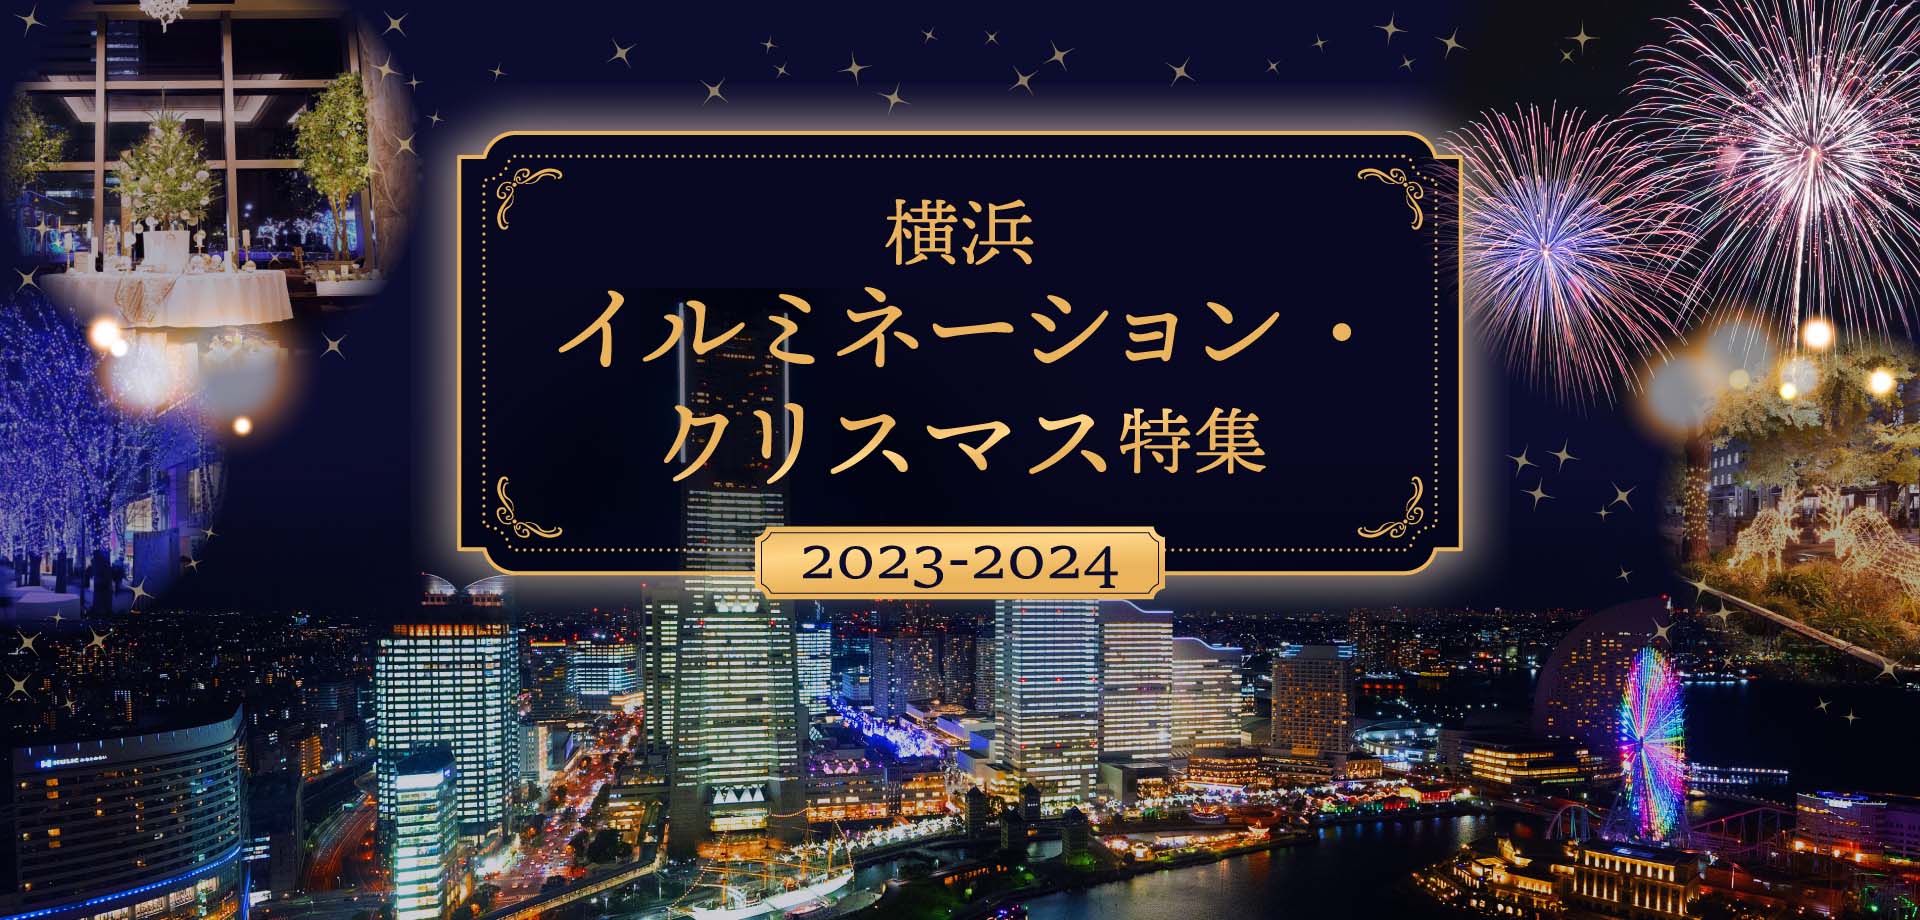 横浜イルミネーション・クリスマス特集2023-2024の画像